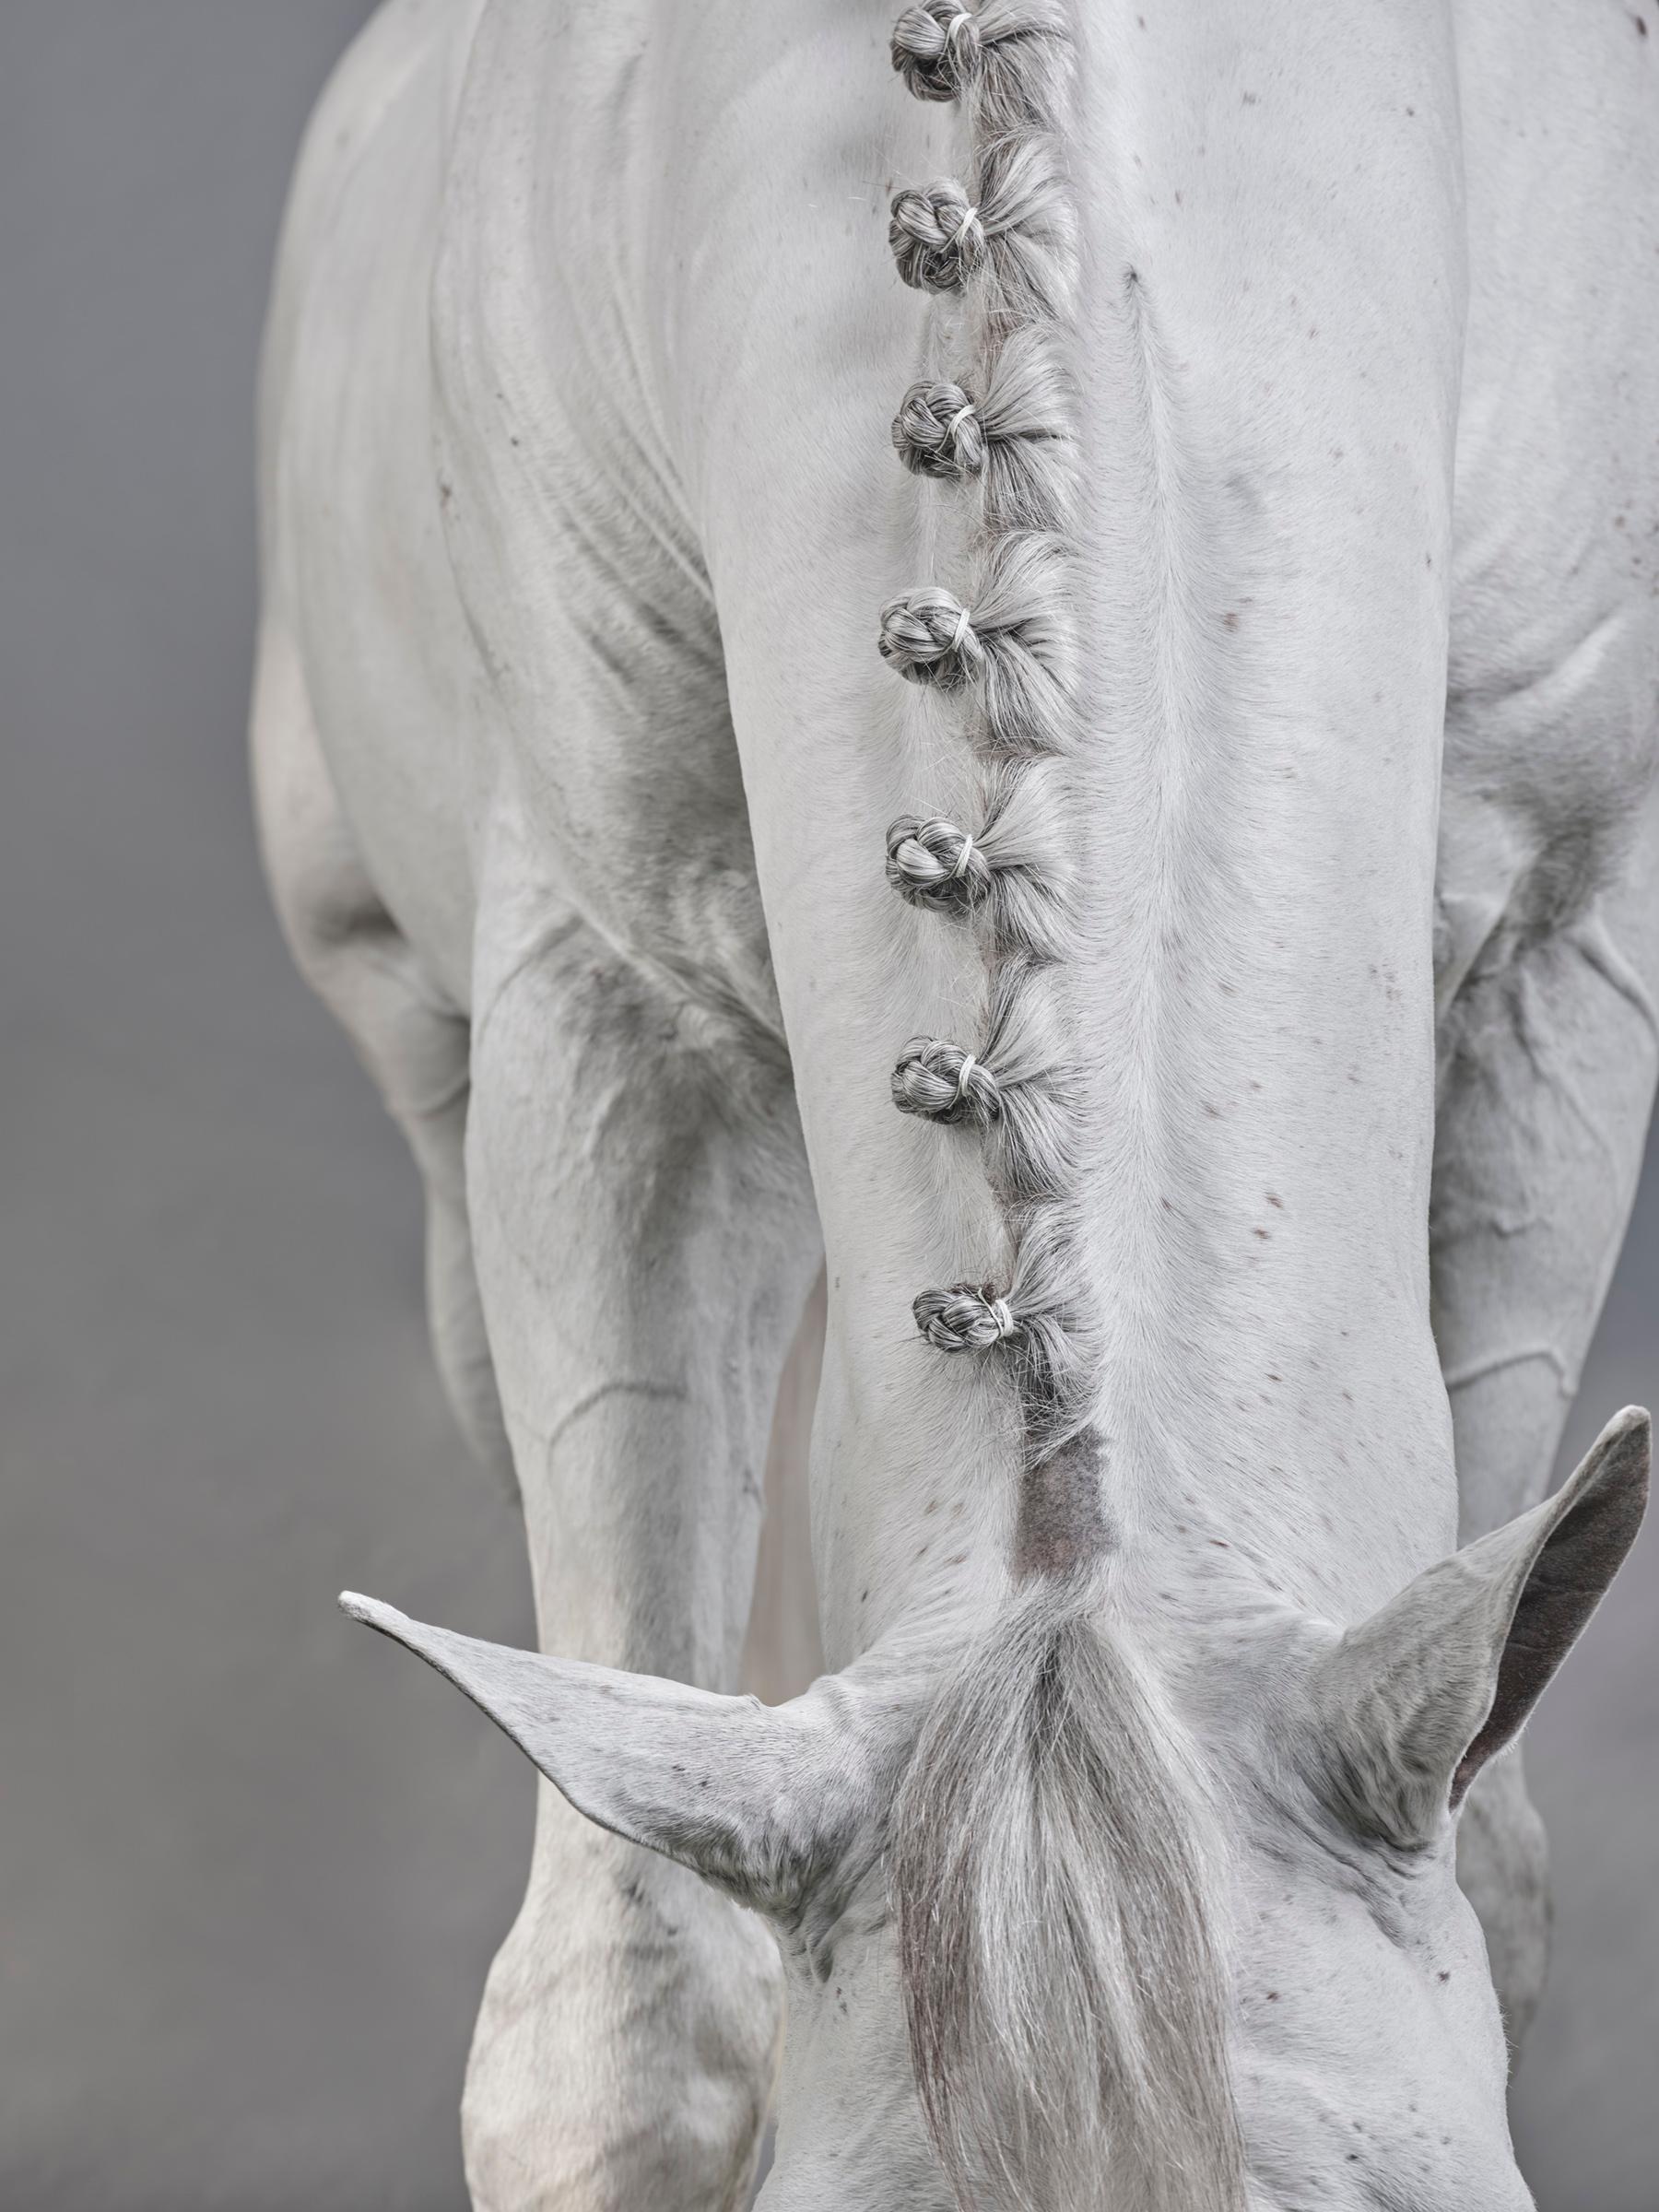 Juan Lamarca Abstract Photograph – Casper III – B&W Limitierte Auflage von Pferdeporträts 2019